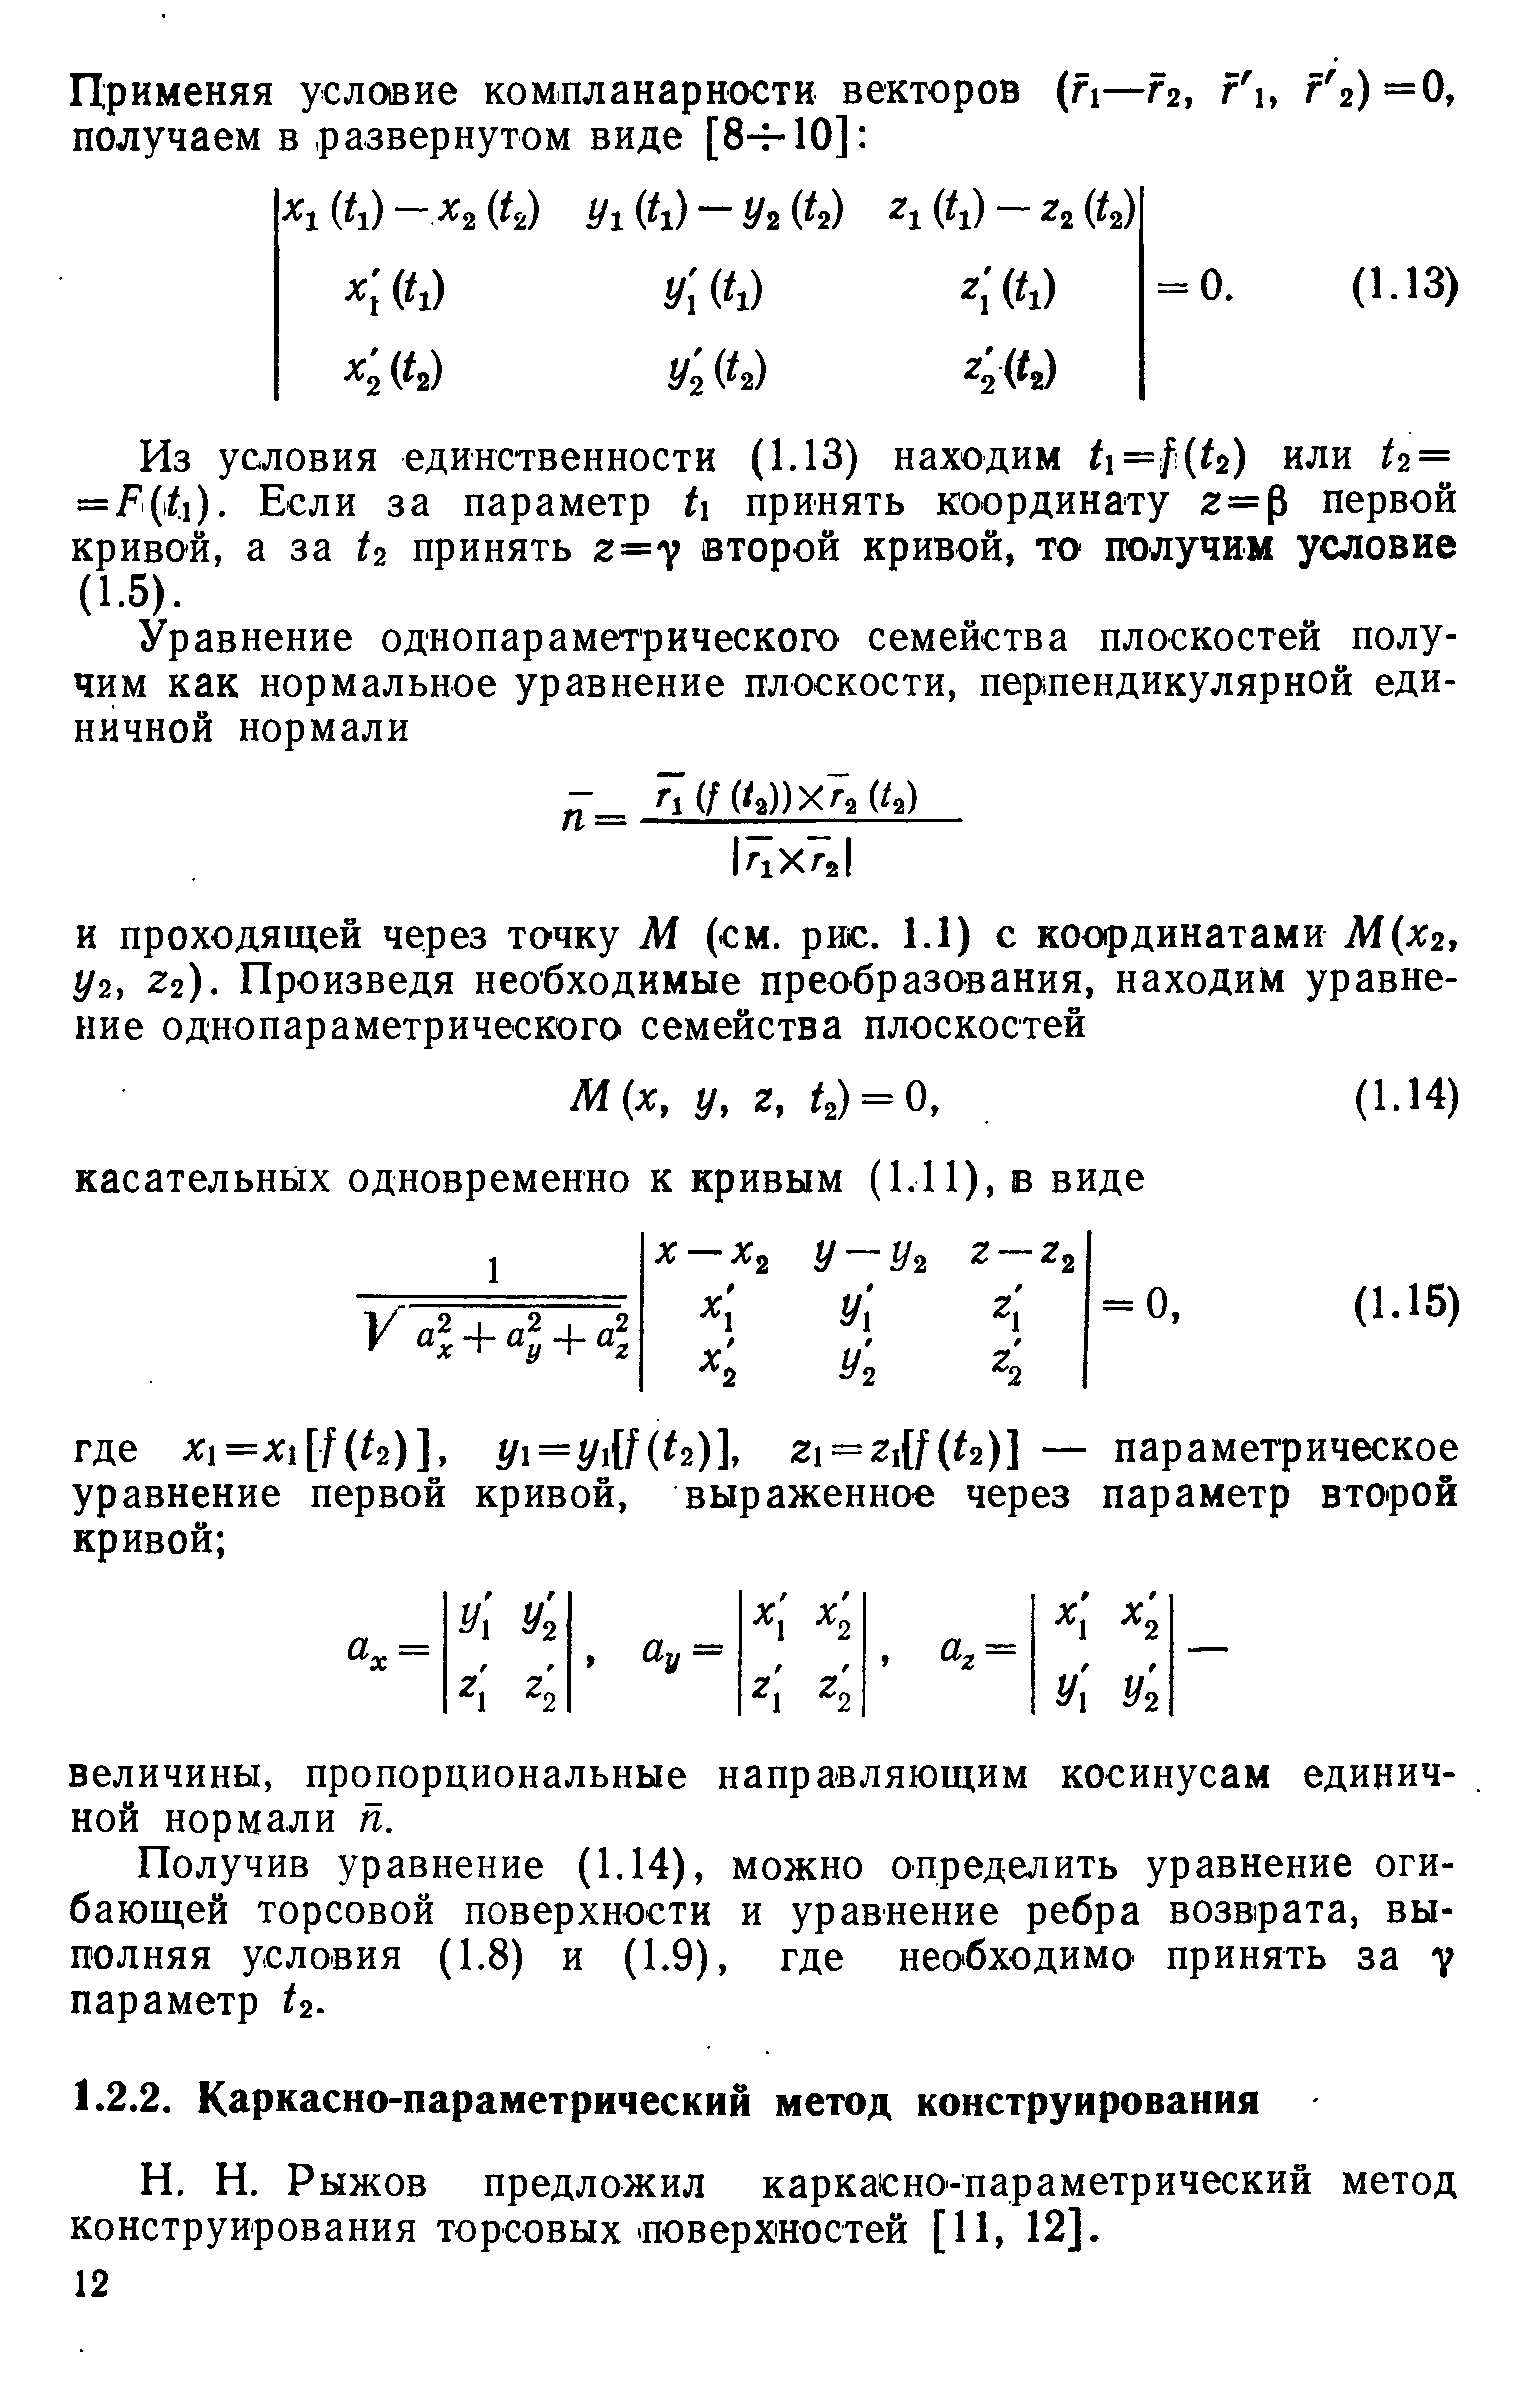 Рыжов предложил каркасно-параметрический метод конструирования торсовых поверхностей [И, 12].
